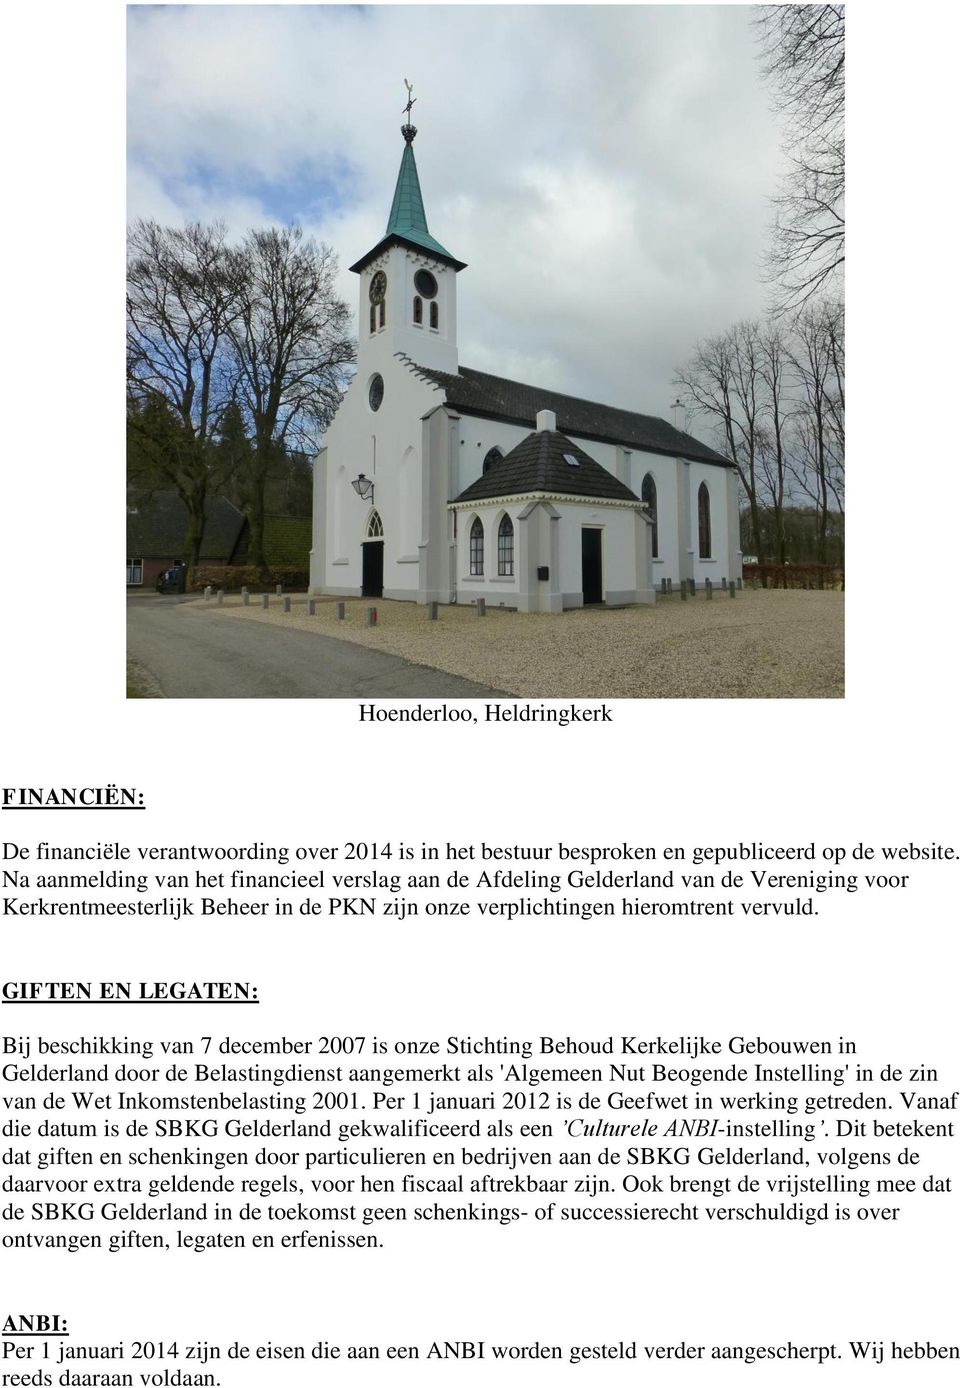 GIFTEN EN LEGATEN: Bij beschikking van 7 december 2007 is onze Stichting Behoud Kerkelijke Gebouwen in Gelderland door de Belastingdienst aangemerkt als 'Algemeen Nut Beogende Instelling' in de zin